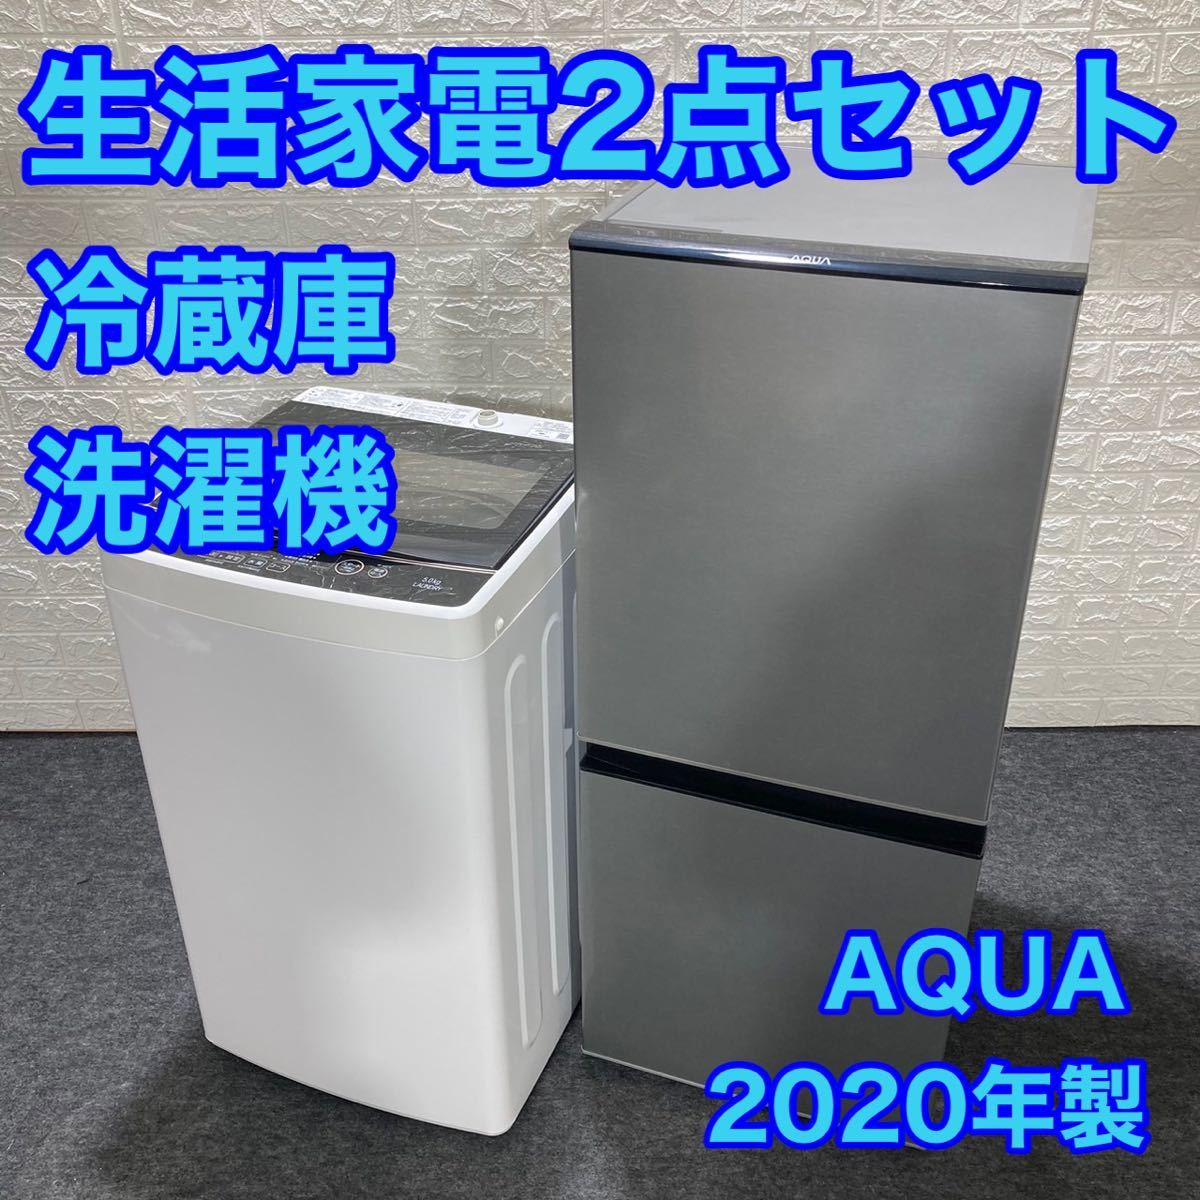 AQUA アクア 生活家電2点セット 冷蔵庫 洗濯機 2020年 d1140 新生活